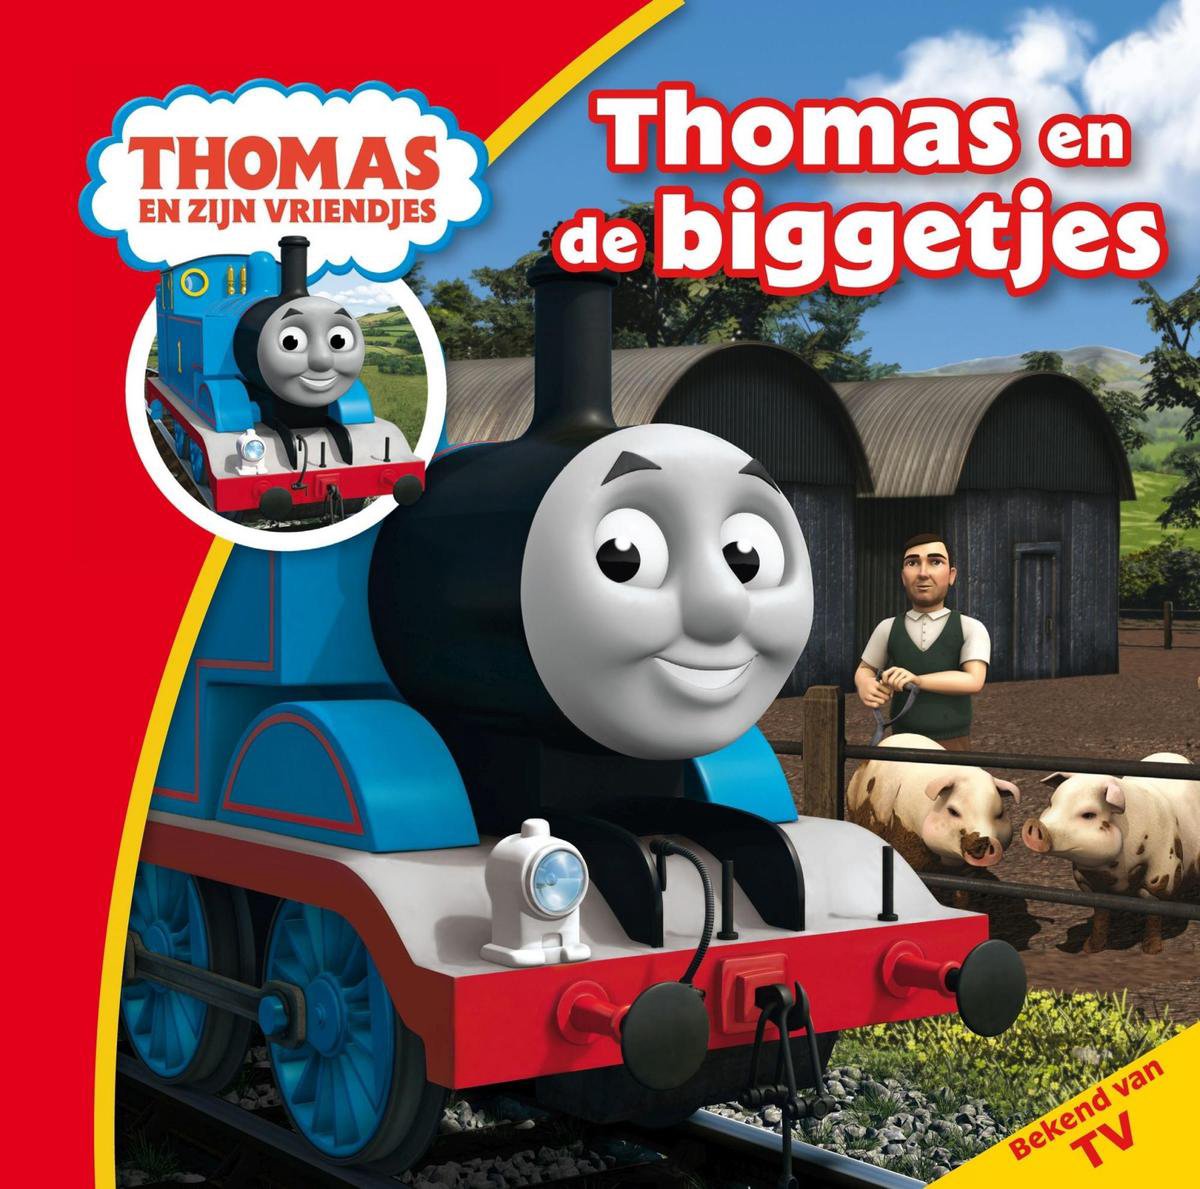 Thomas en de biggetjes